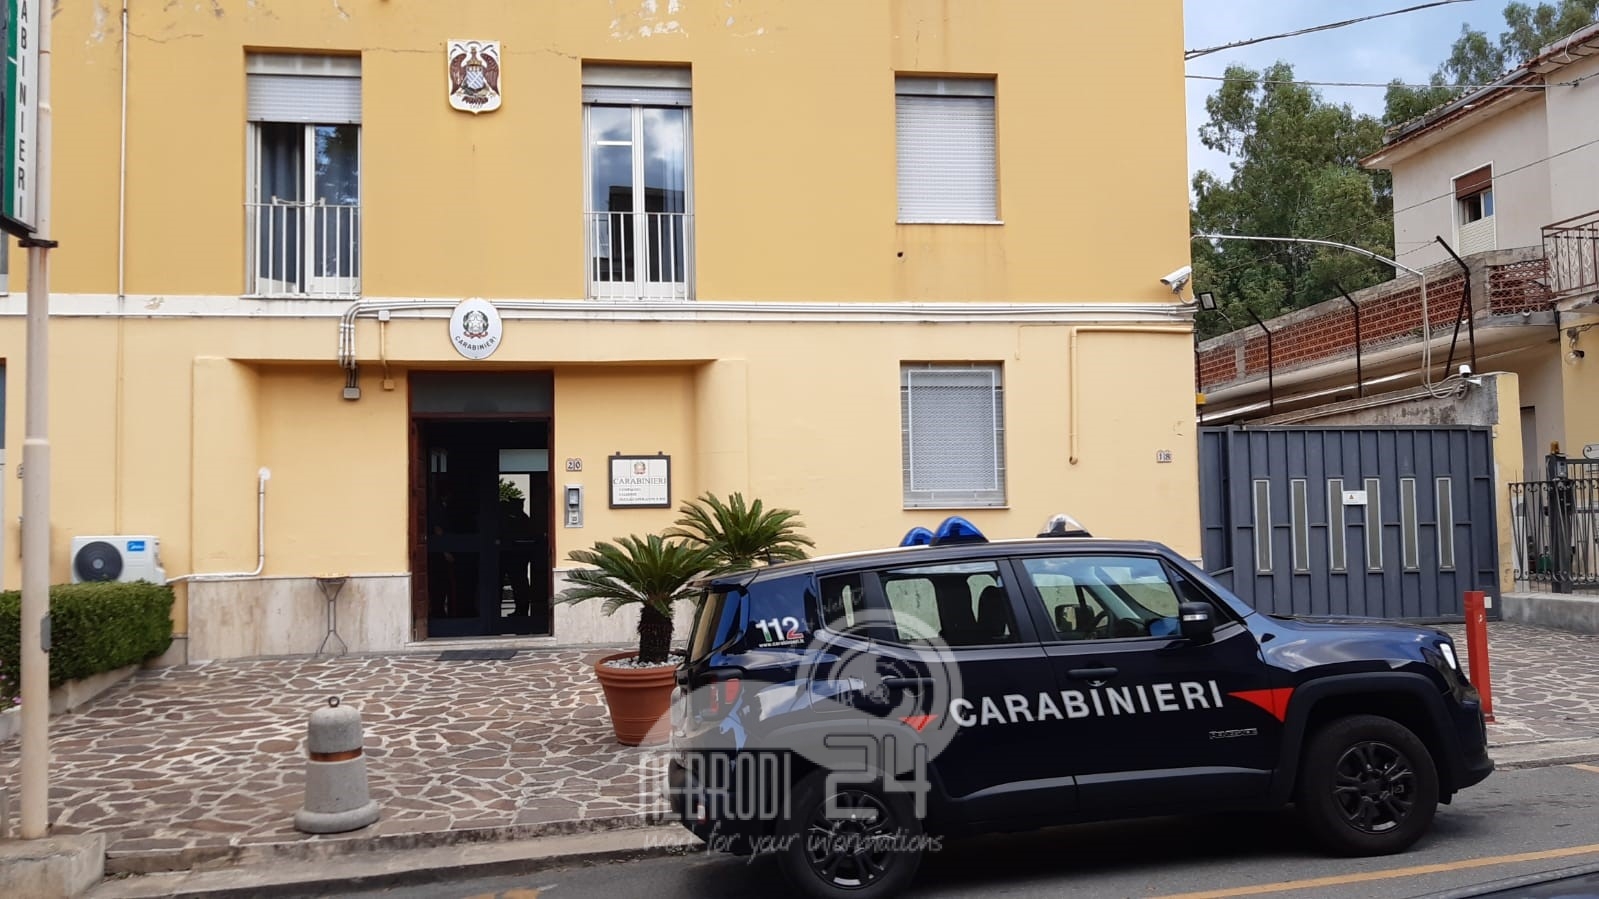 Patti – Condannato con sentenza definitiva a 2 anni di reclusione per rapina aggravata in concorso. 35enne arrestato dai Carabinieri